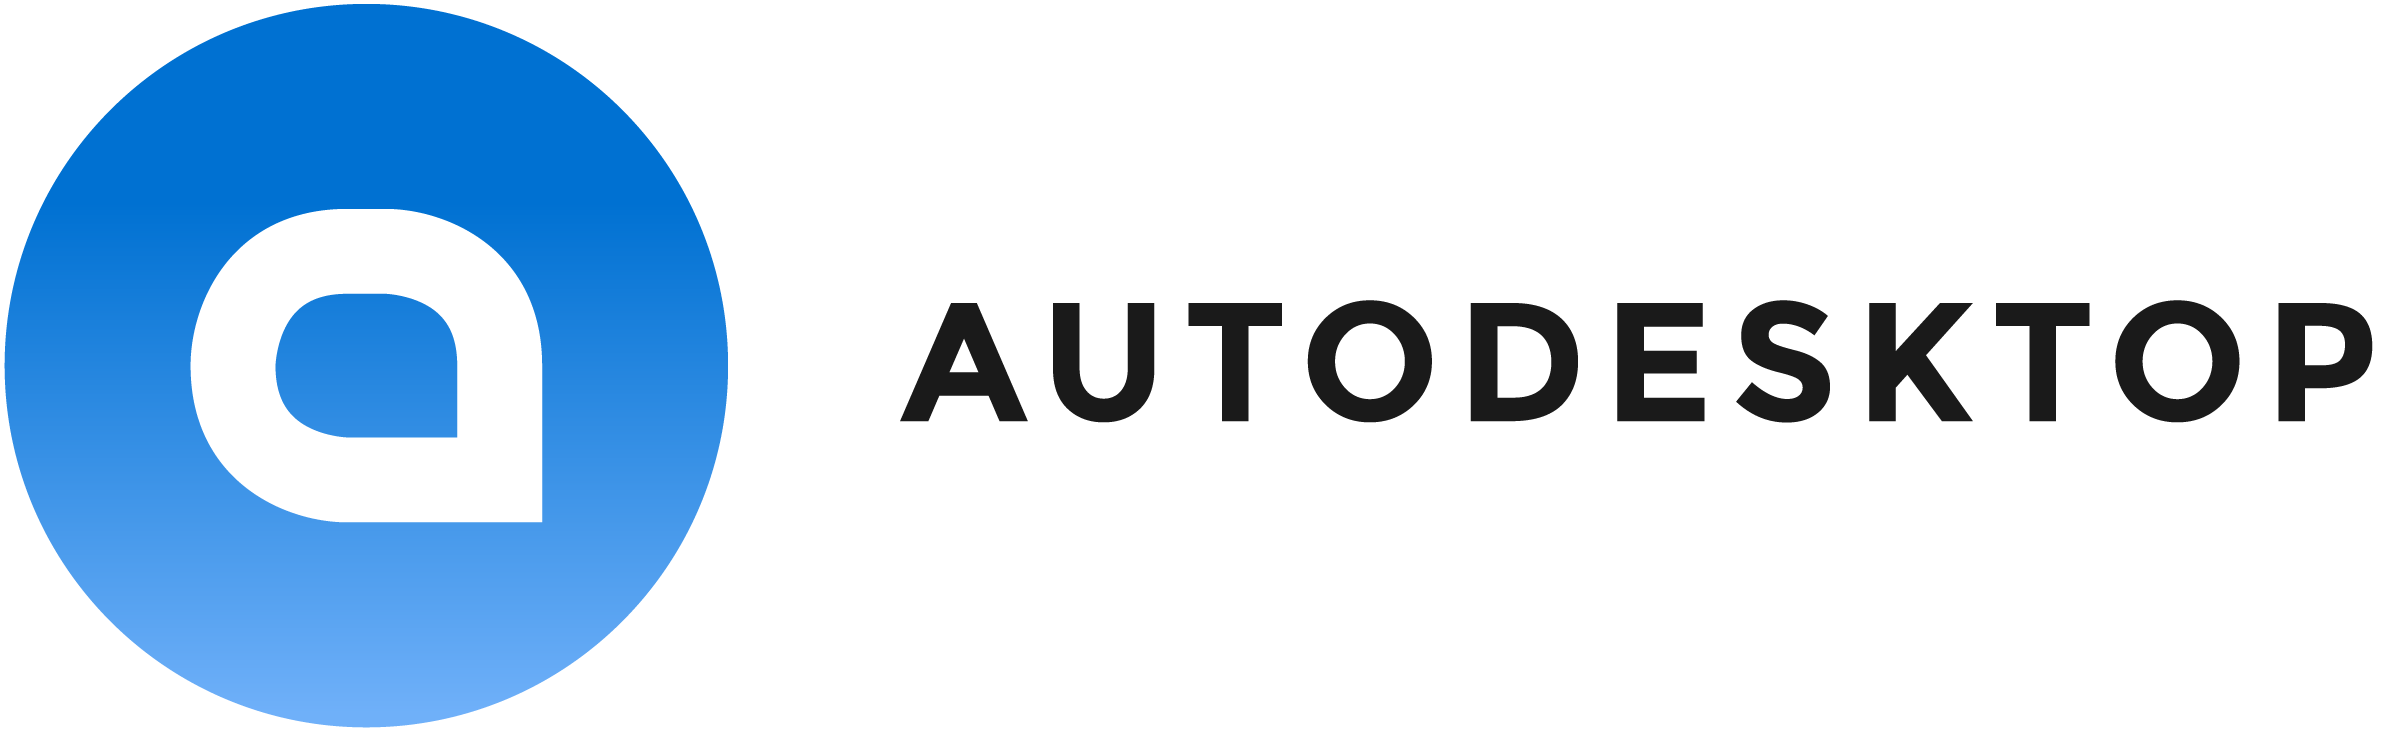 AutoDesktop – Biltorvet A/S